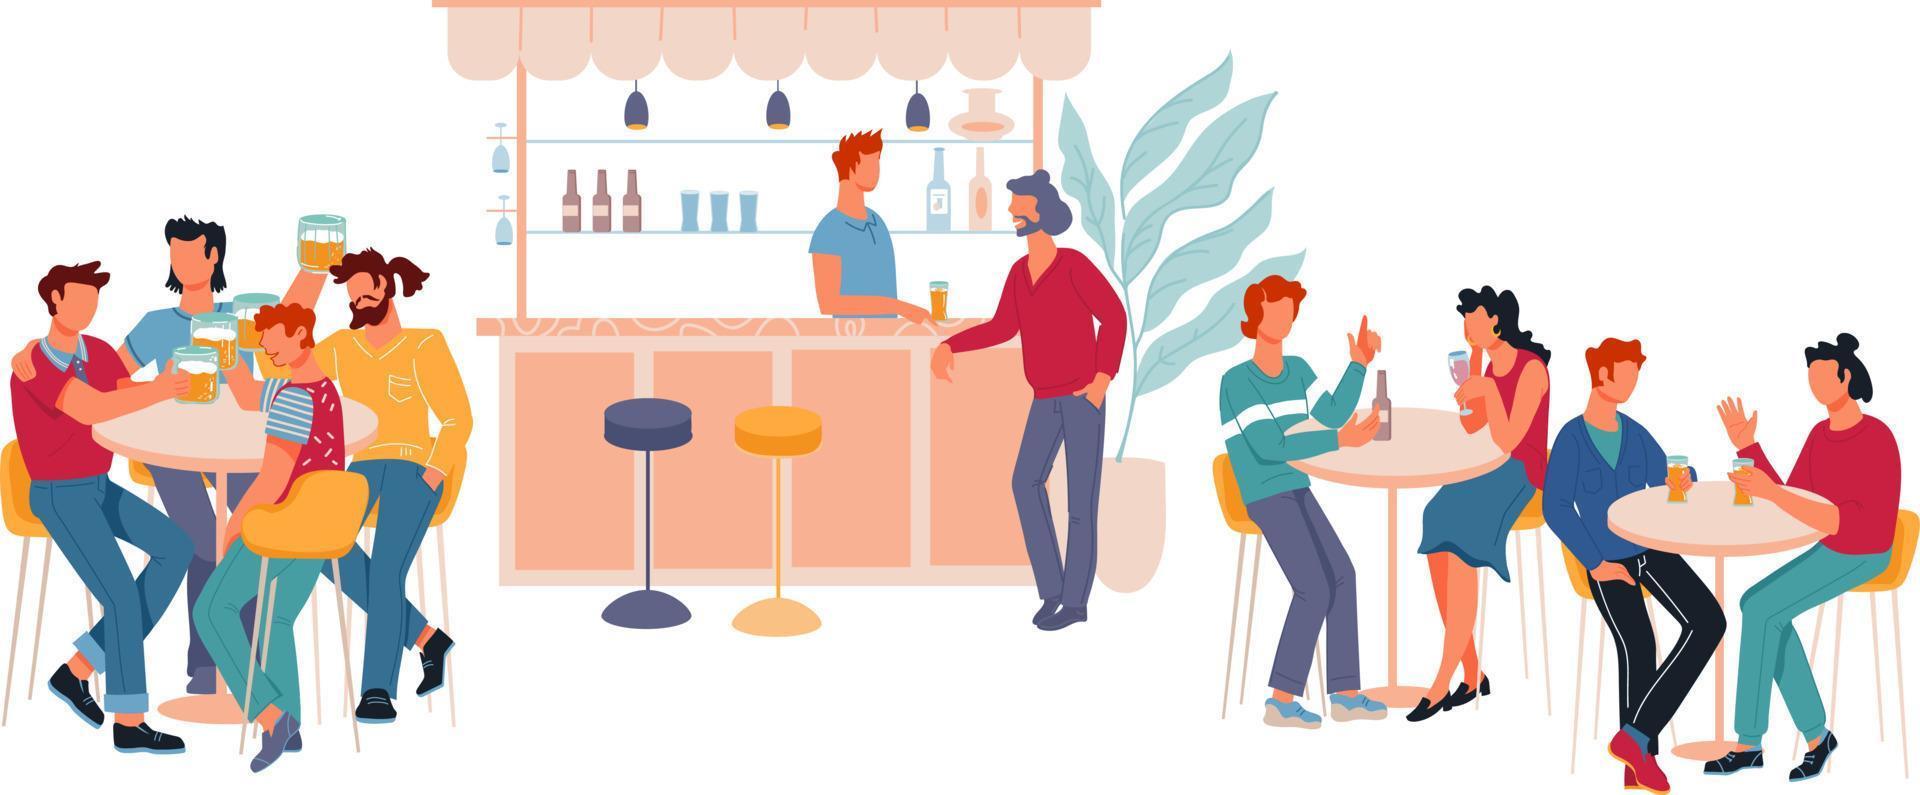 intérieur de restaurant ou de bar avec des personnages de dessins animés assis à des tables et buvant de la bière. pub avec des visiteurs qui parlent et trinquent avec des boissons alcoolisées. illustration de vecteur plat isolé.